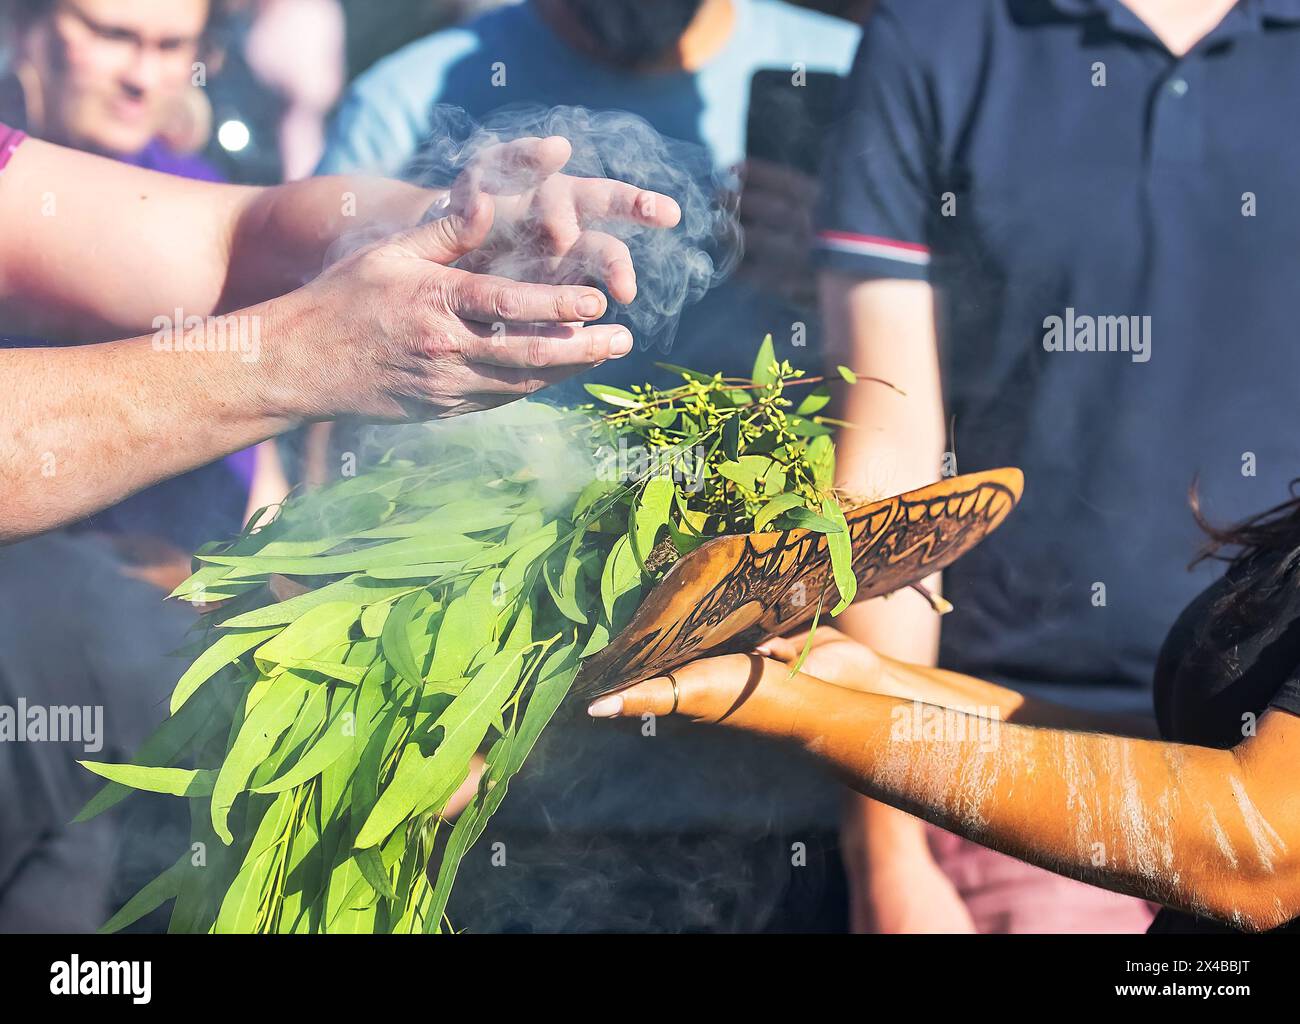 Fuoco rituale con ramo in fiamme verdi, fumo e fuoco, il rito rituale del fumo in un evento della comunità indigena in Australia Foto Stock